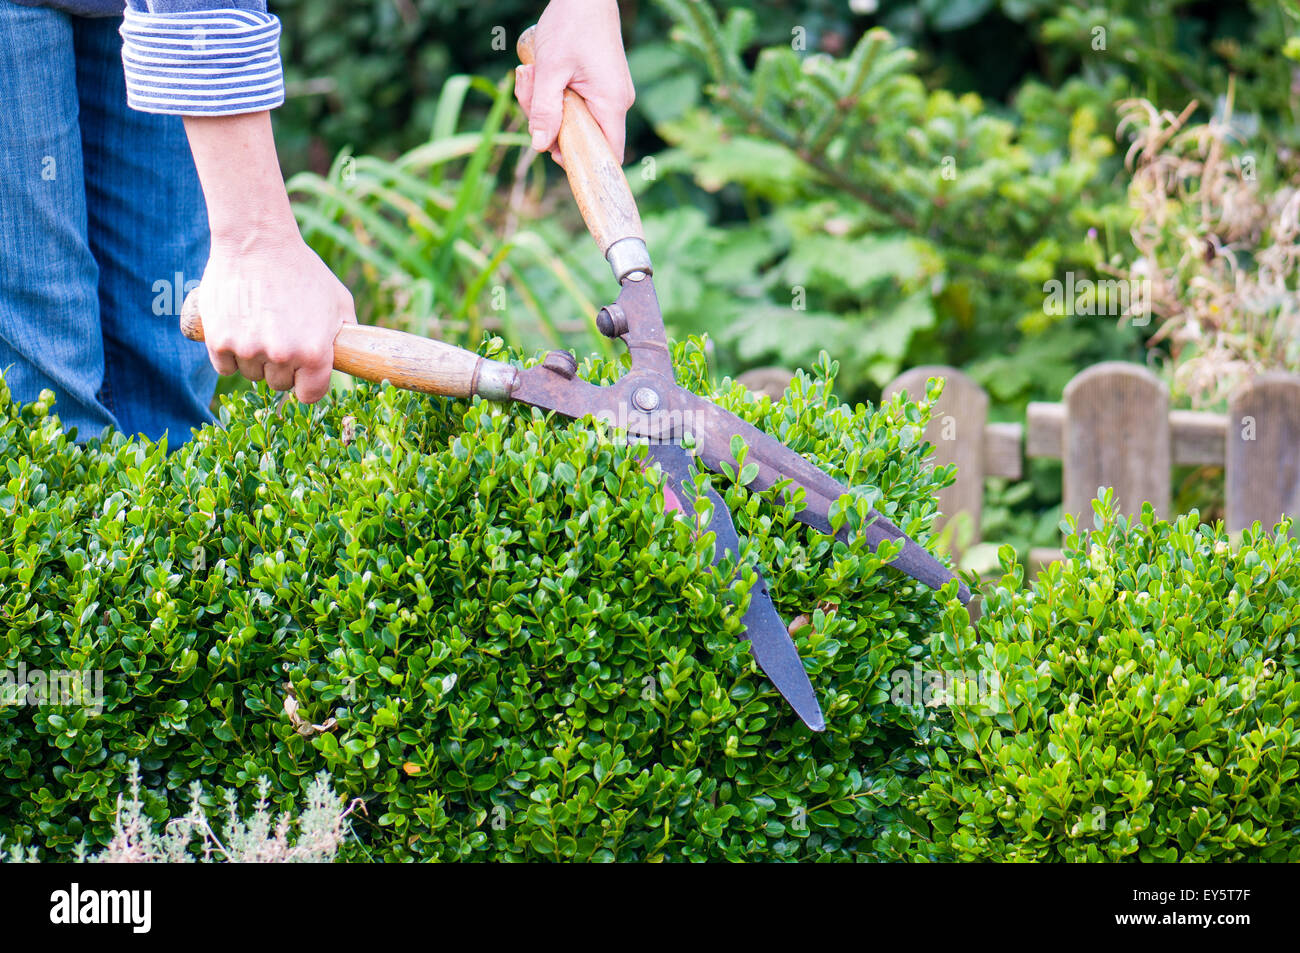 Cuadro de poda de hedge en un jardín con pares de cizallamiento Foto de stock